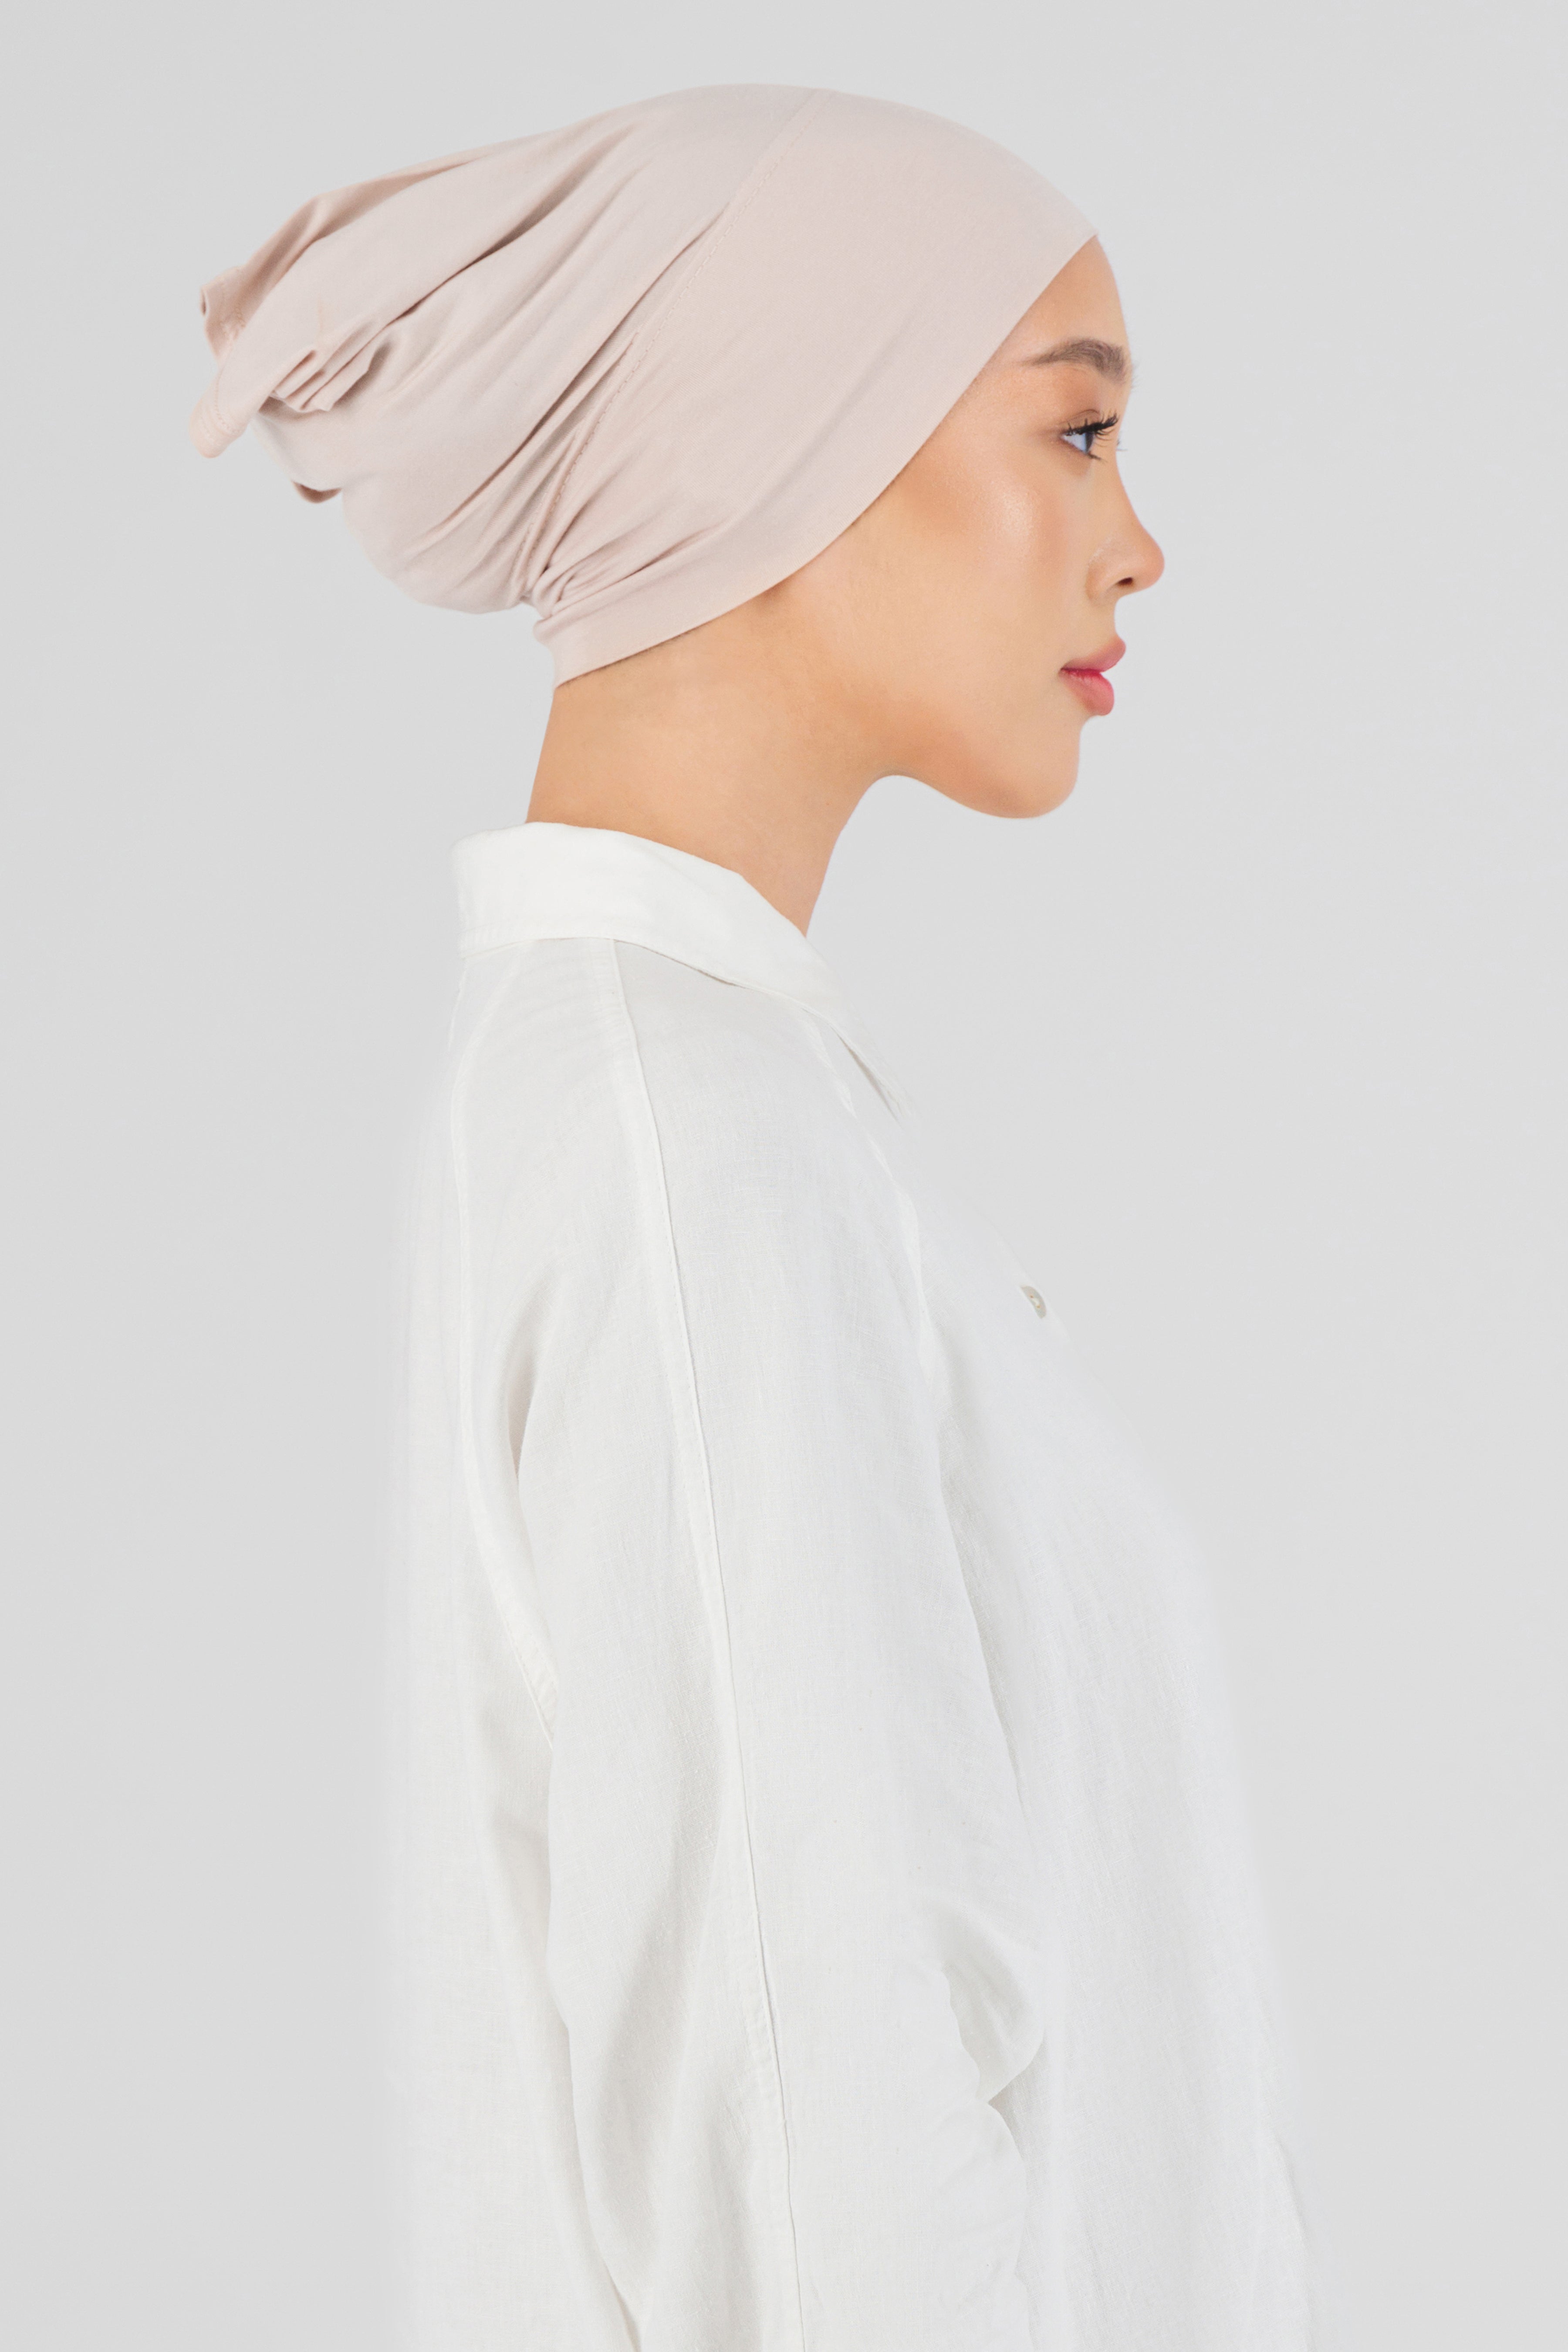 CA - Matching Chiffon Hijab Set - Lace